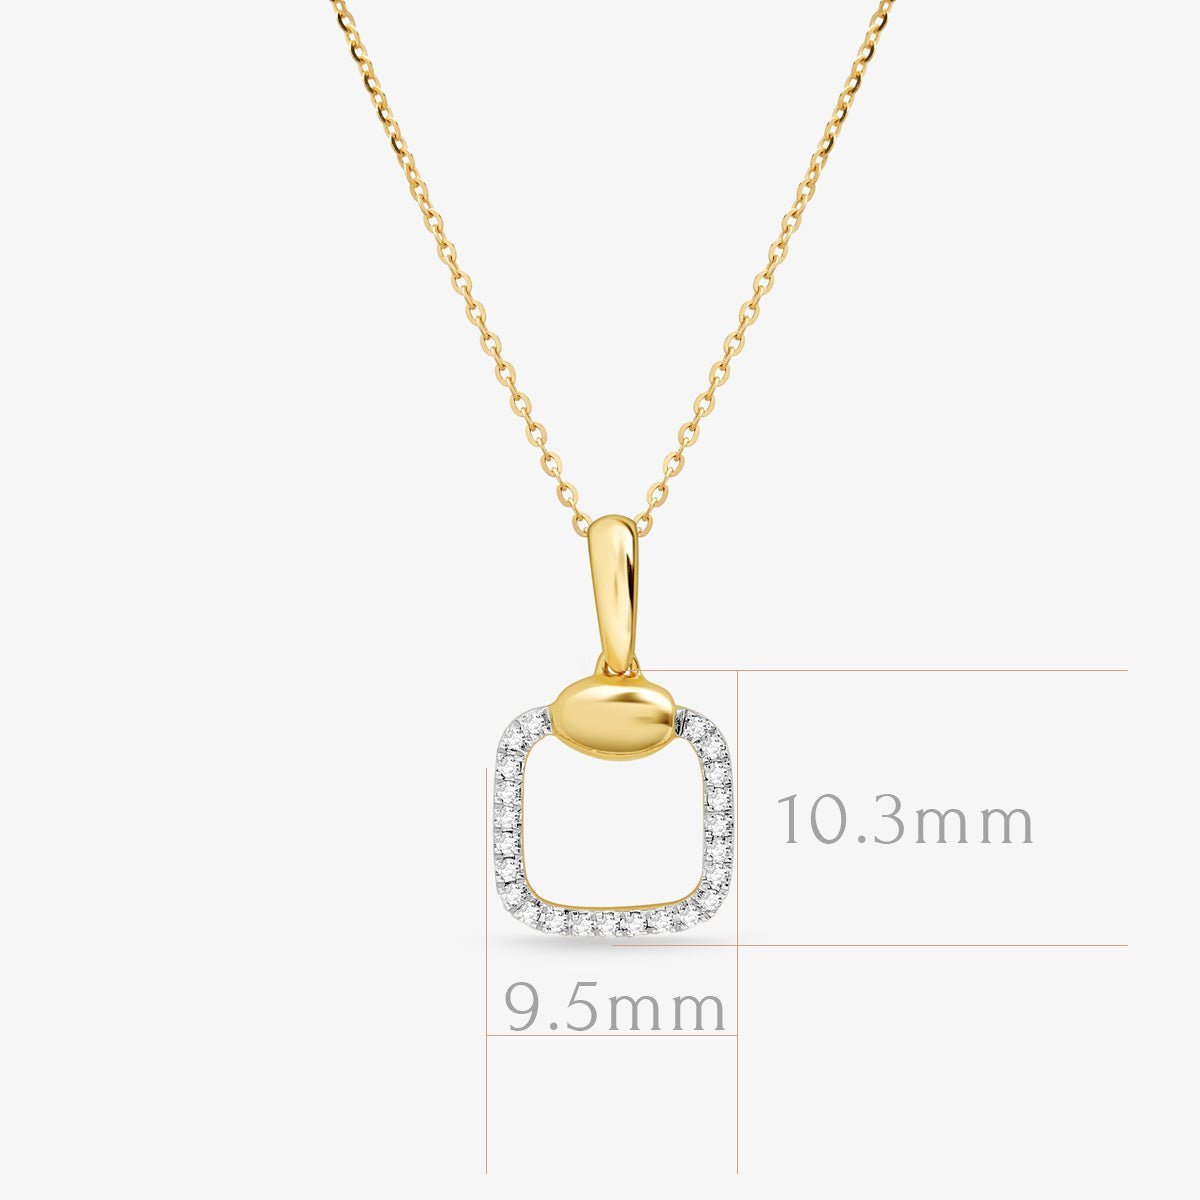 Diamond Pavé Square Cushion Pendant Necklace Necklaces Estella Collection #product_description# 17549 14k Diamond Gemstone #tag4# #tag5# #tag6# #tag7# #tag8# #tag9# #tag10#